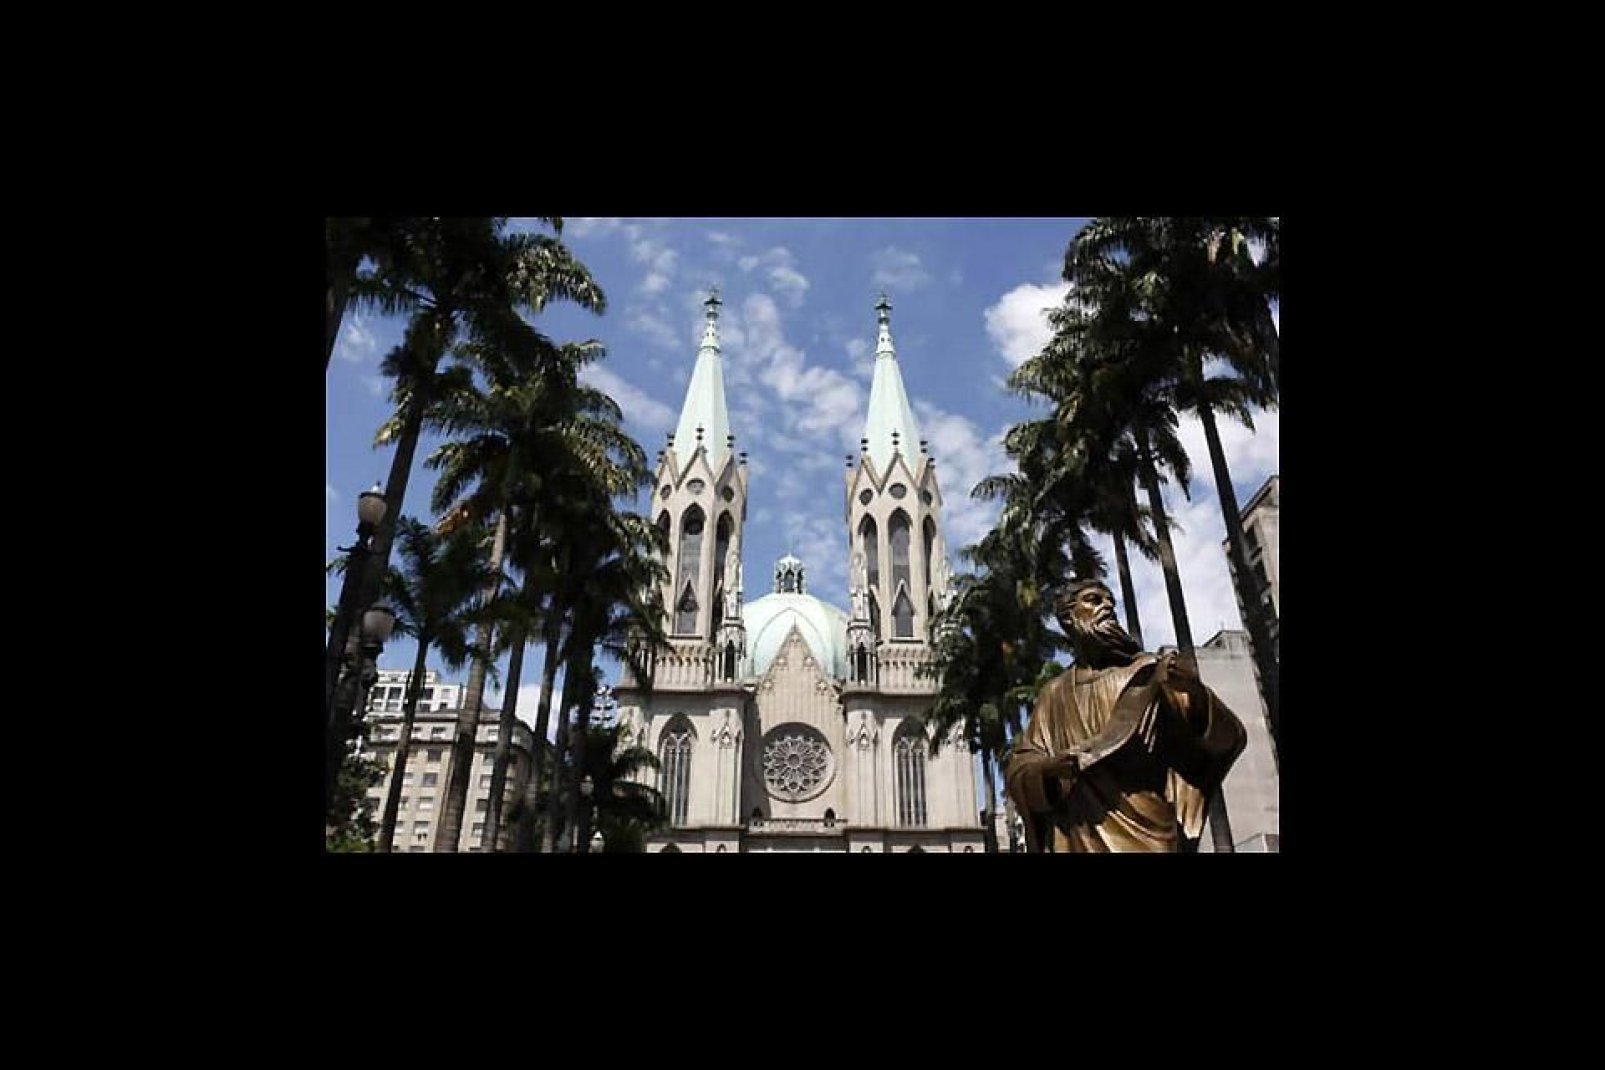 Di fronte alla cattedrale si trova la statua dell'apostolo Paolo, per rendere omaggio al fondatore di São Paulo. È stata eretta in suo onore in seguito alla sua conversione al cattolicesimo.